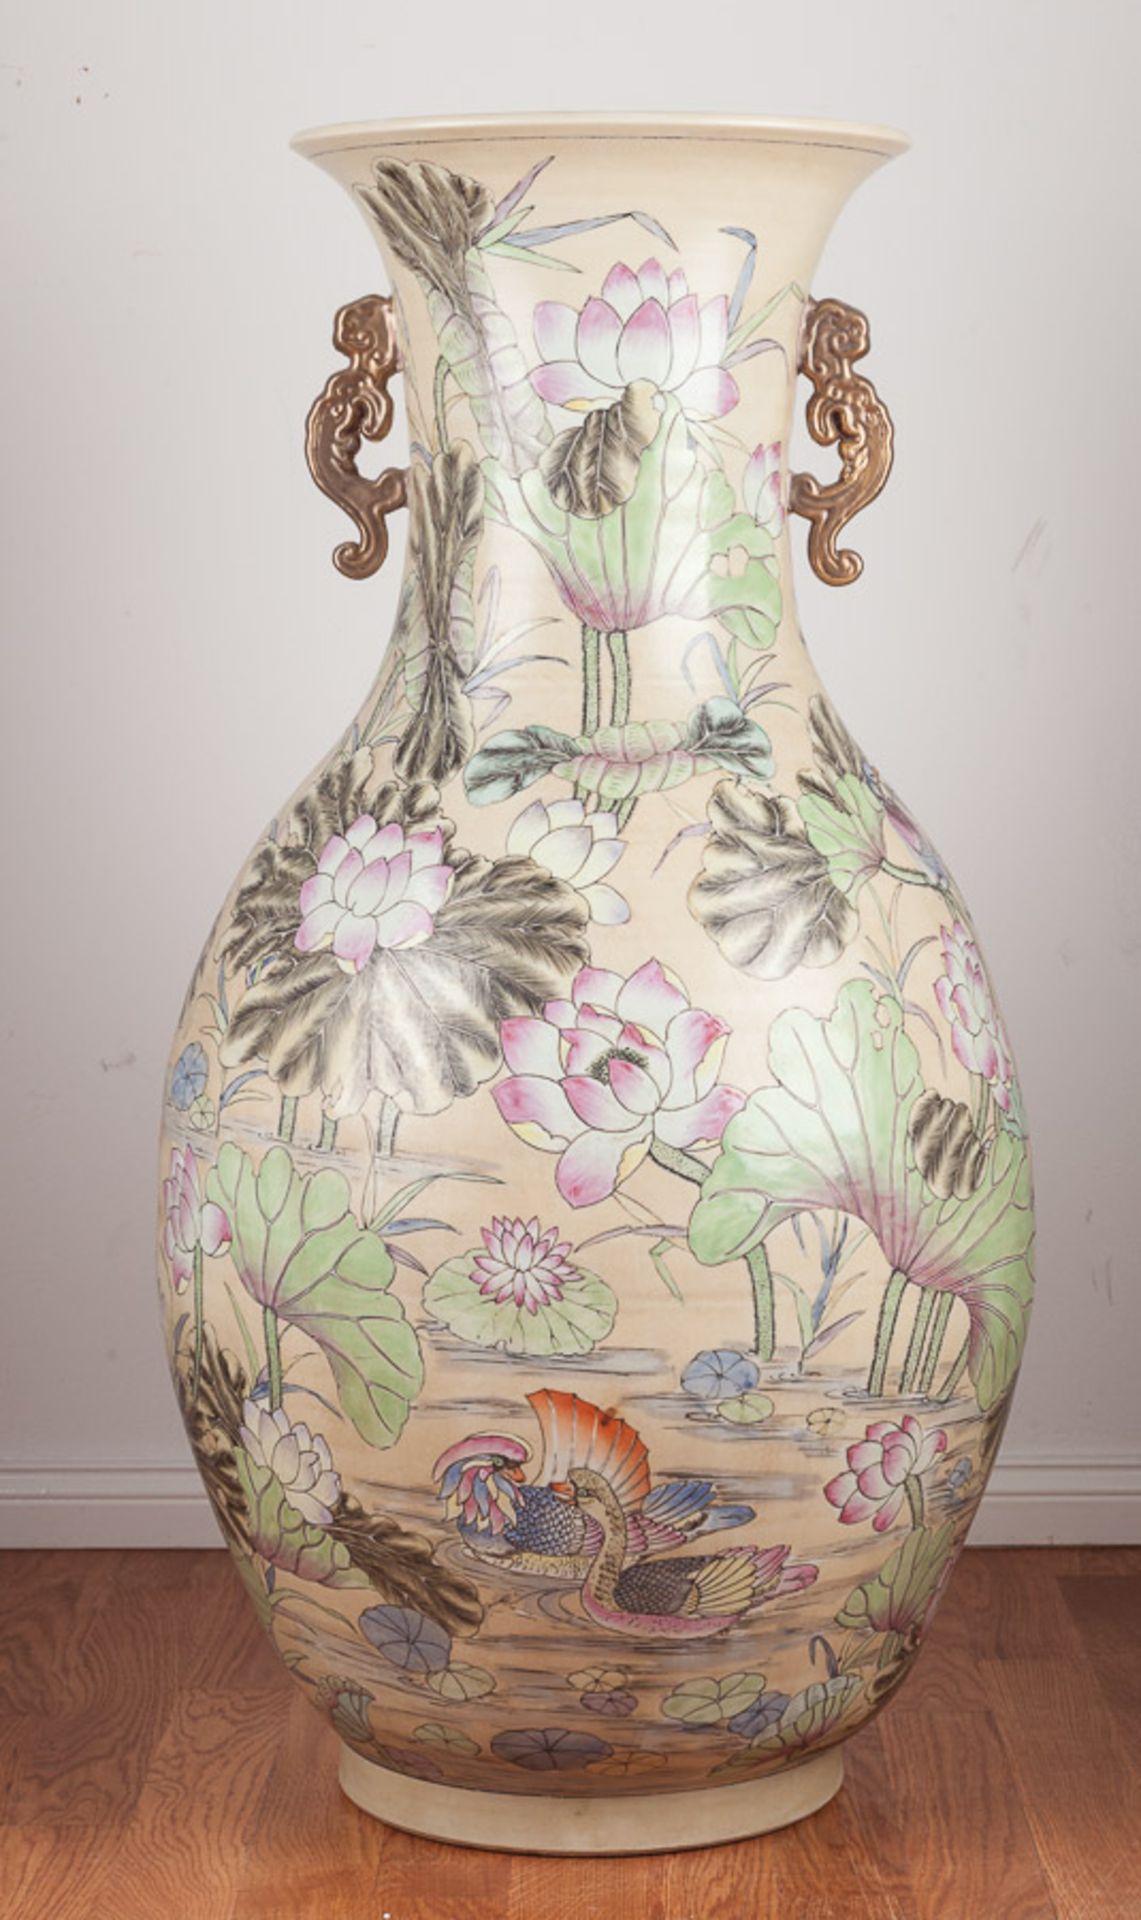 asiatische Vase / Asian vaseSeerosendekor, mit vergoldete Handhaben, 
H: 92 cm, Ø 45 cm, unterm